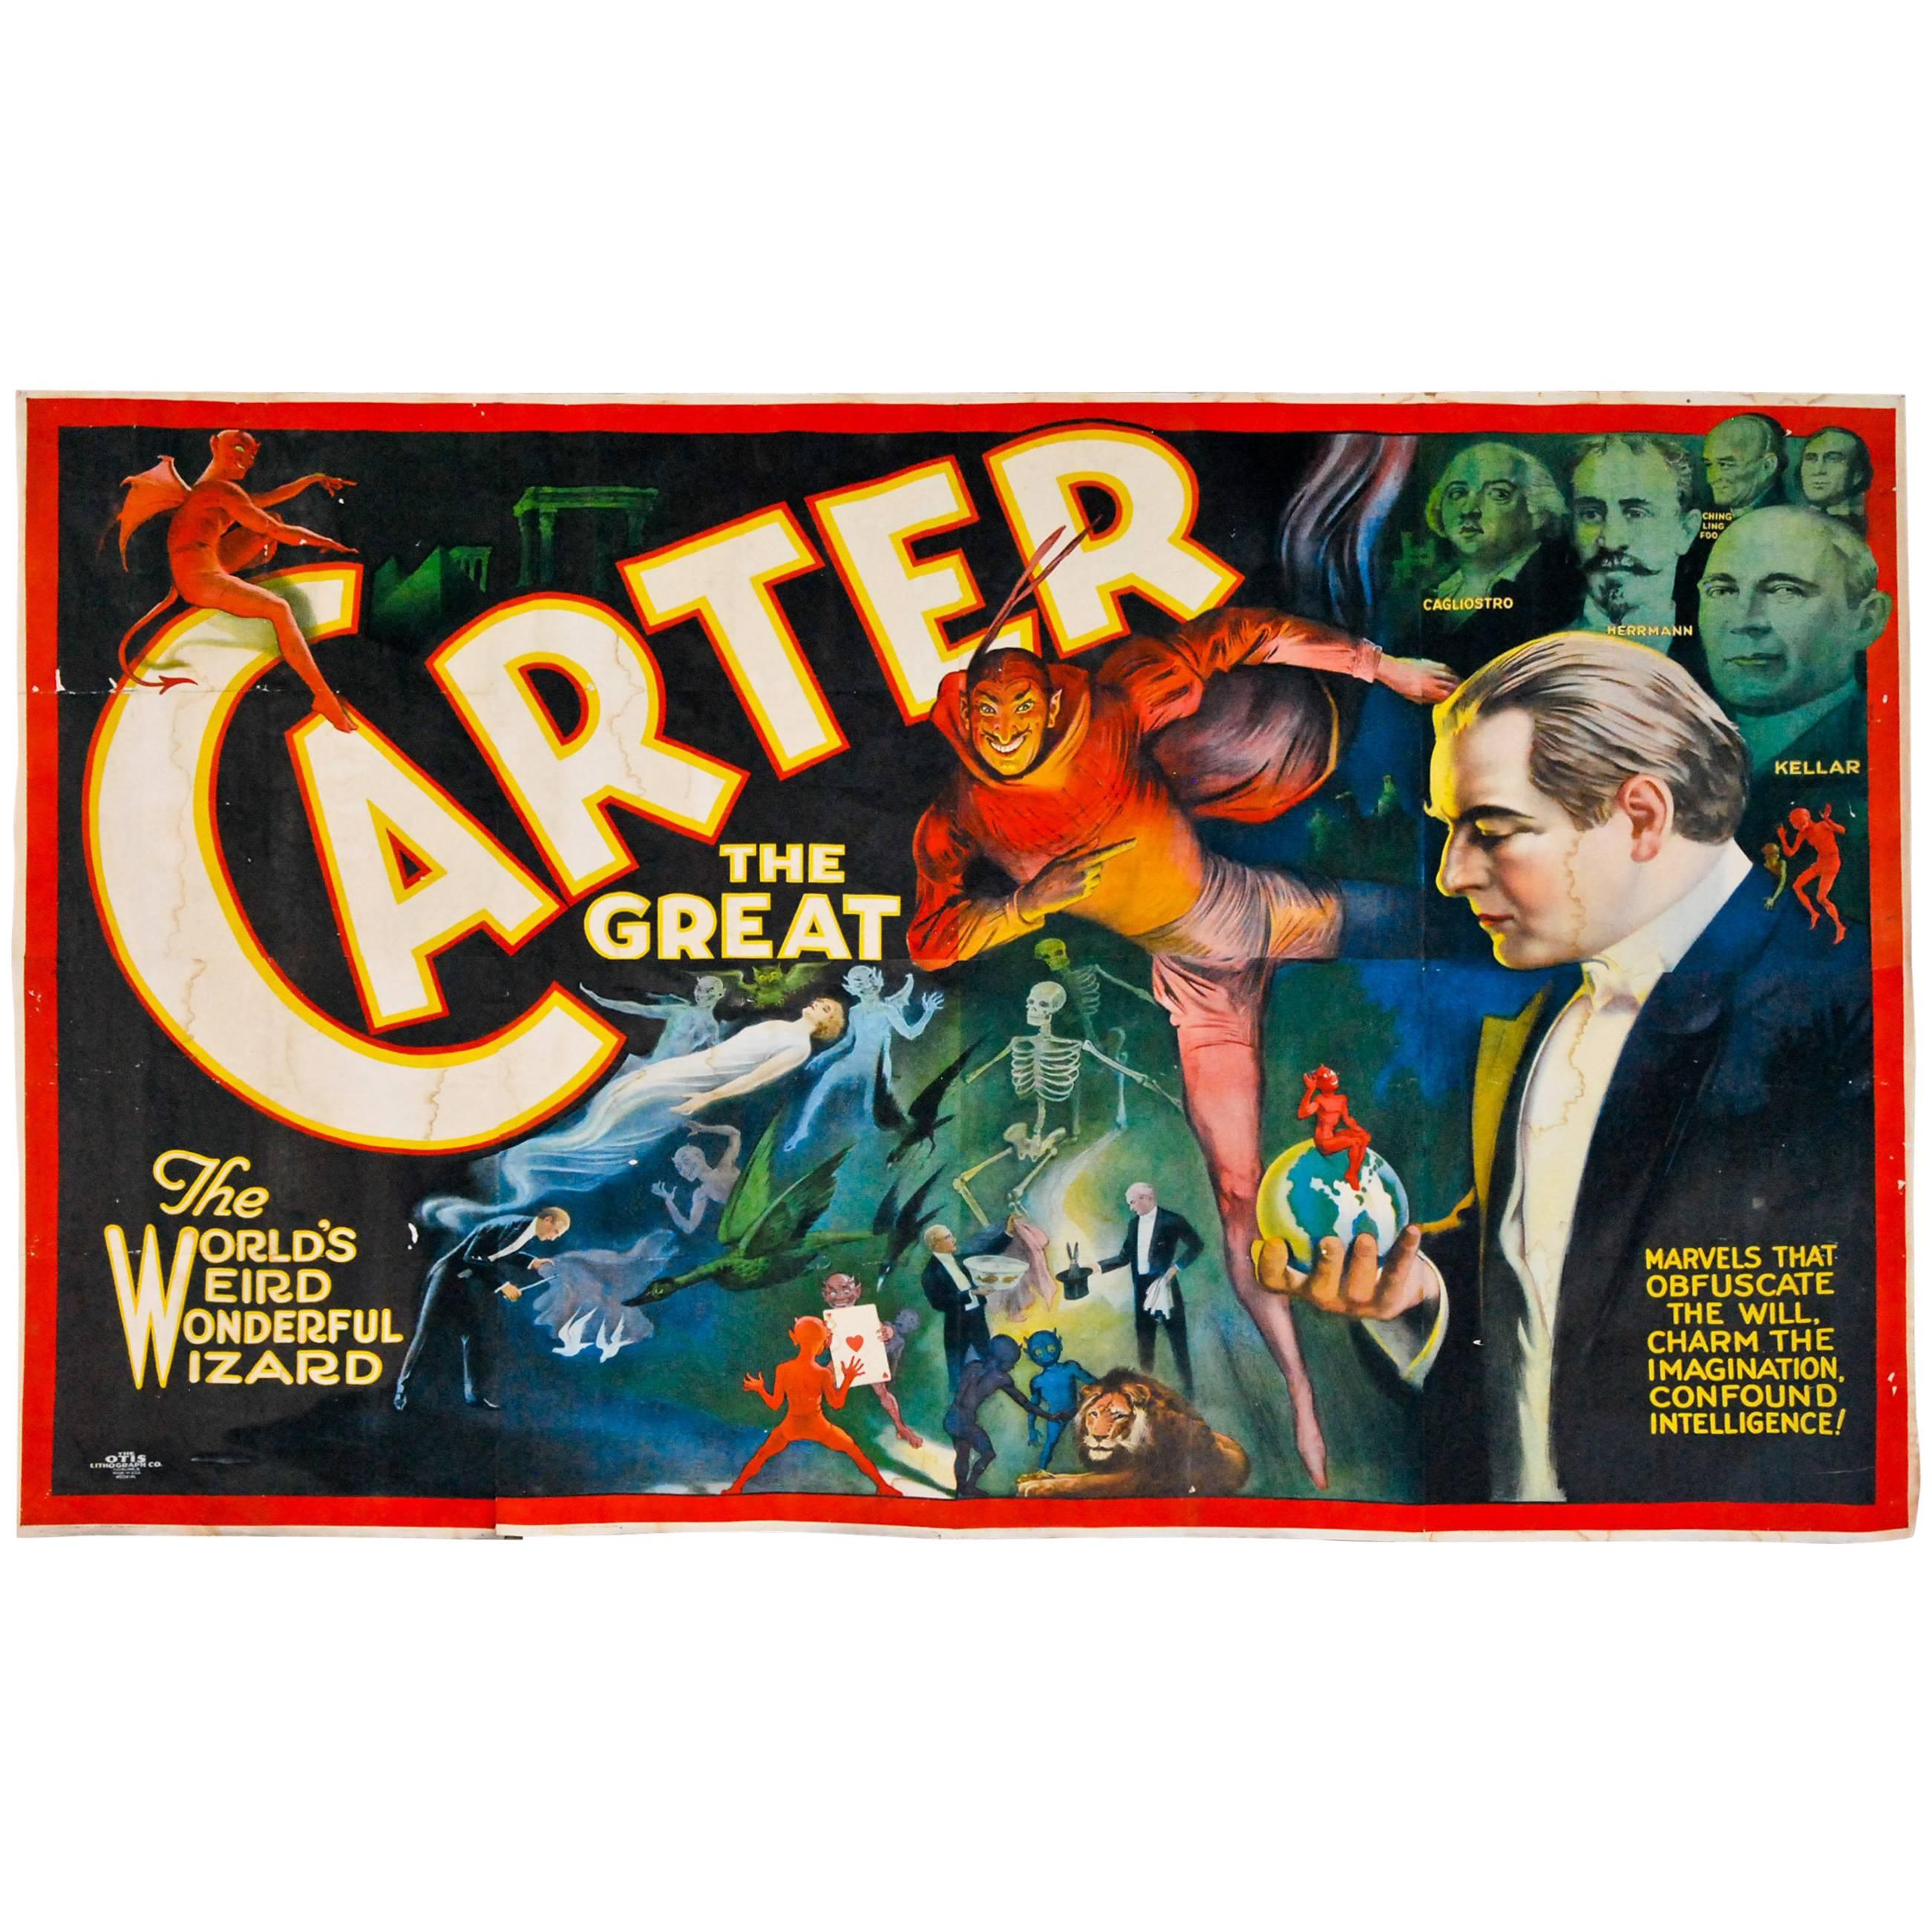 Le grand bannière de Carter par Otis Lithograph, Cleveland, 1915